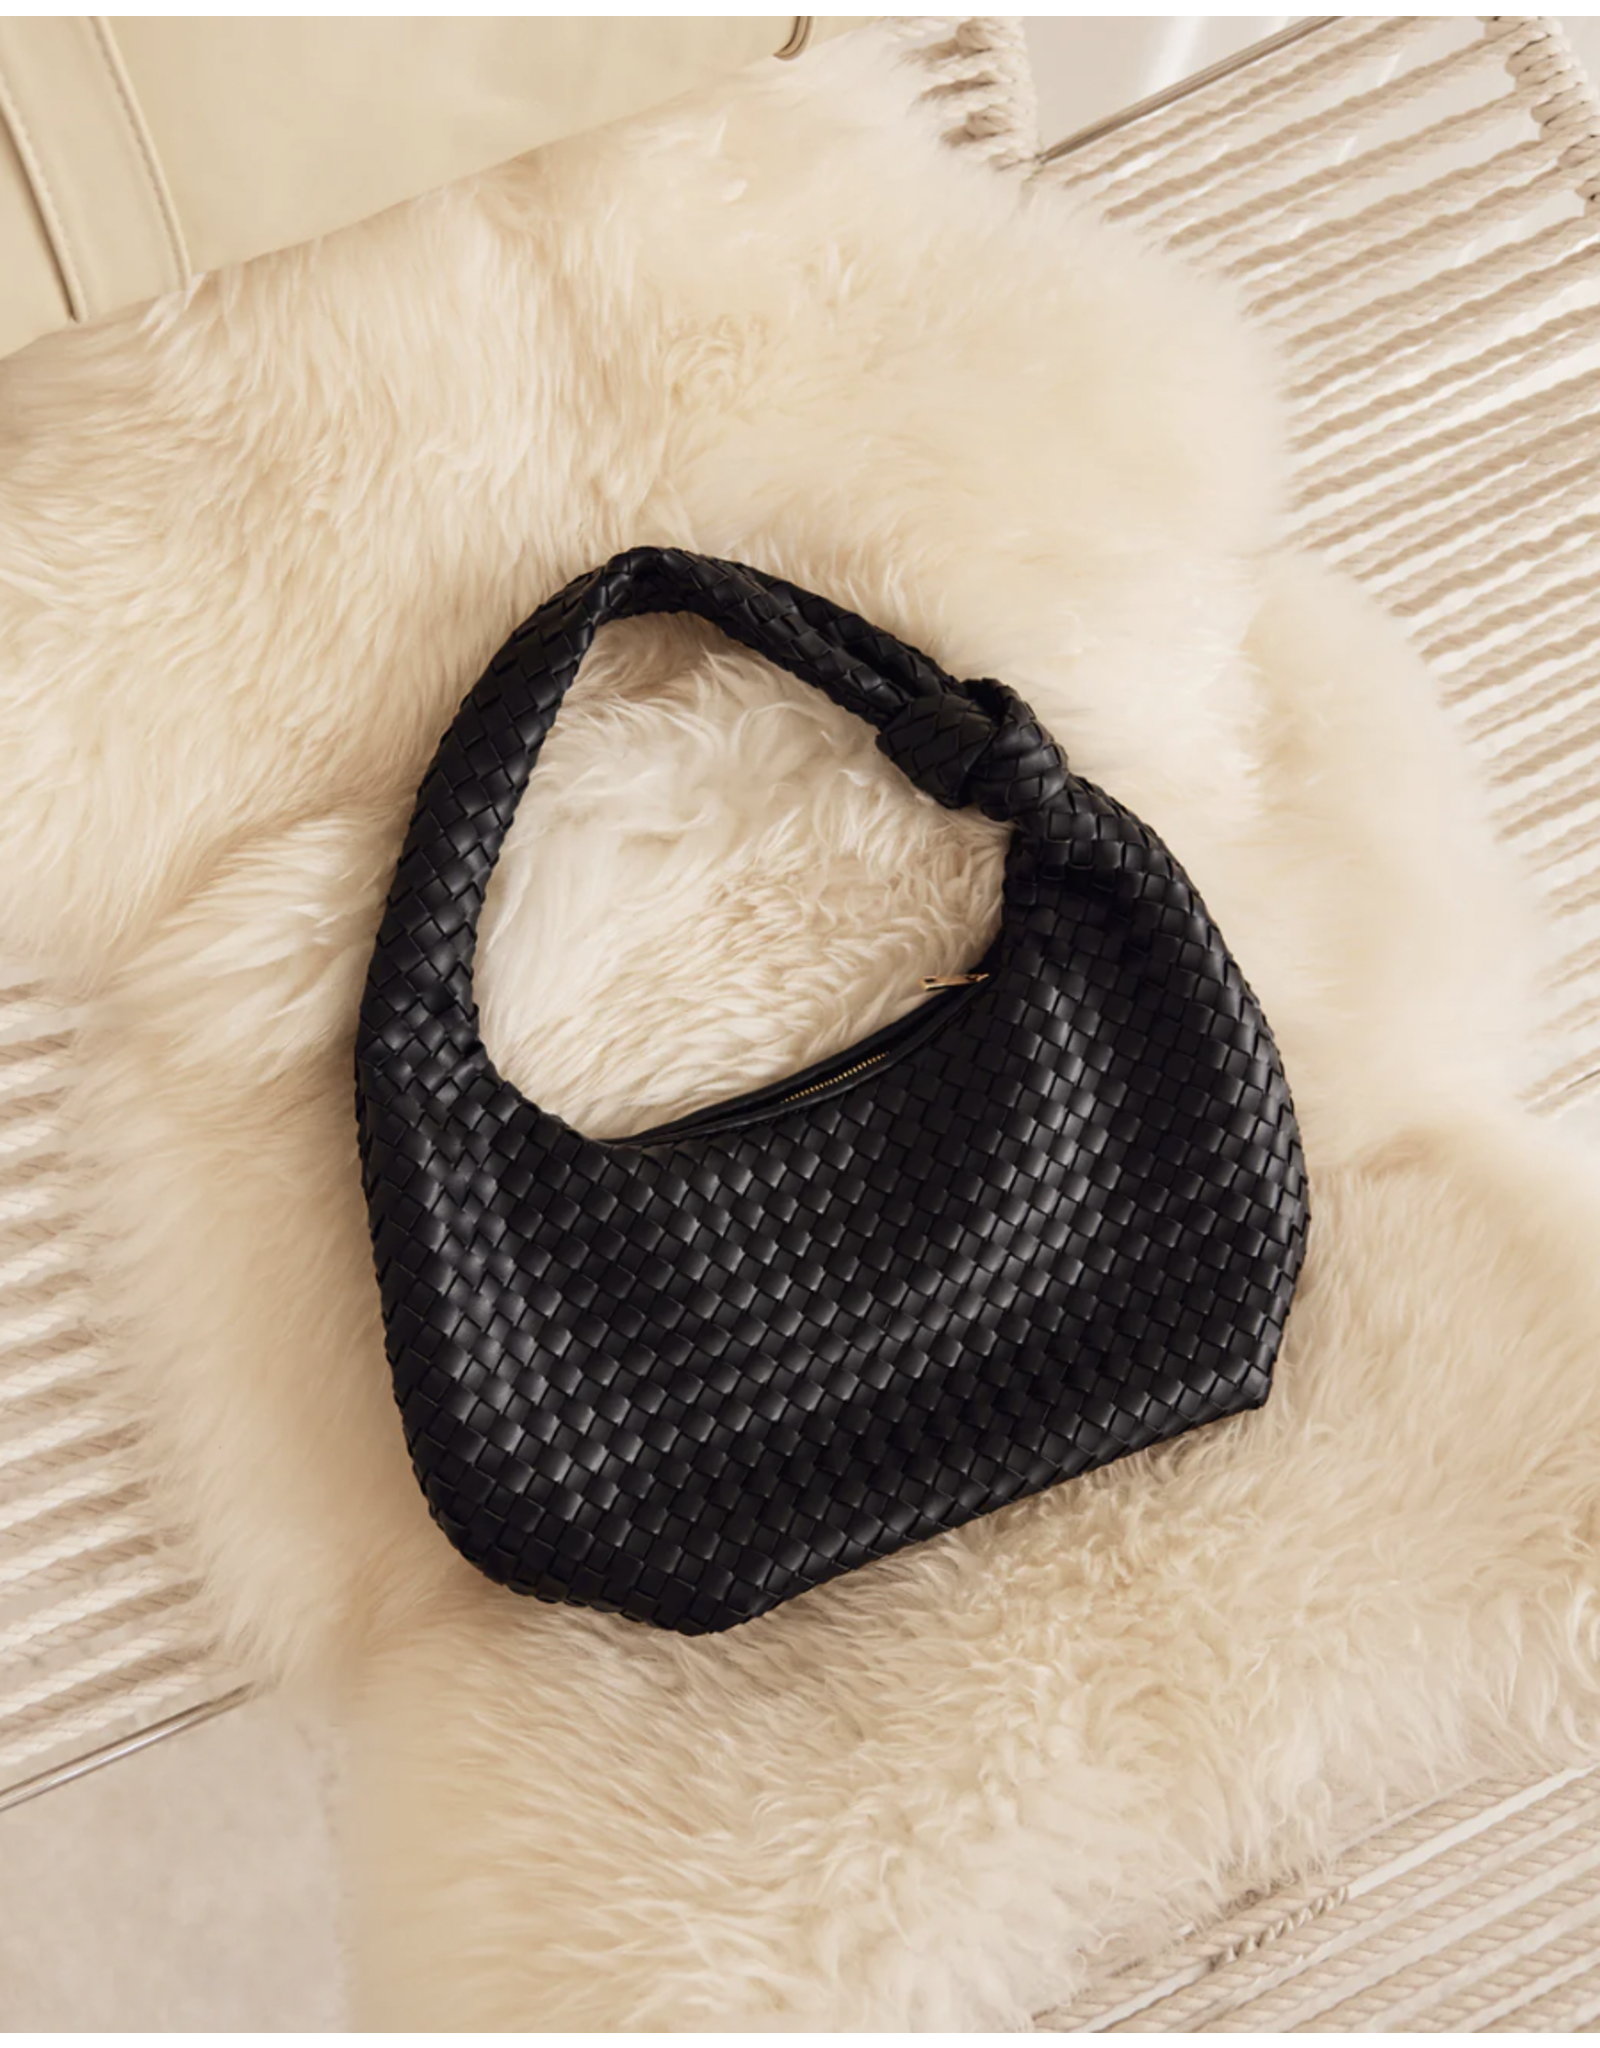 Billini - Kenya Shoulder Bag (Black)